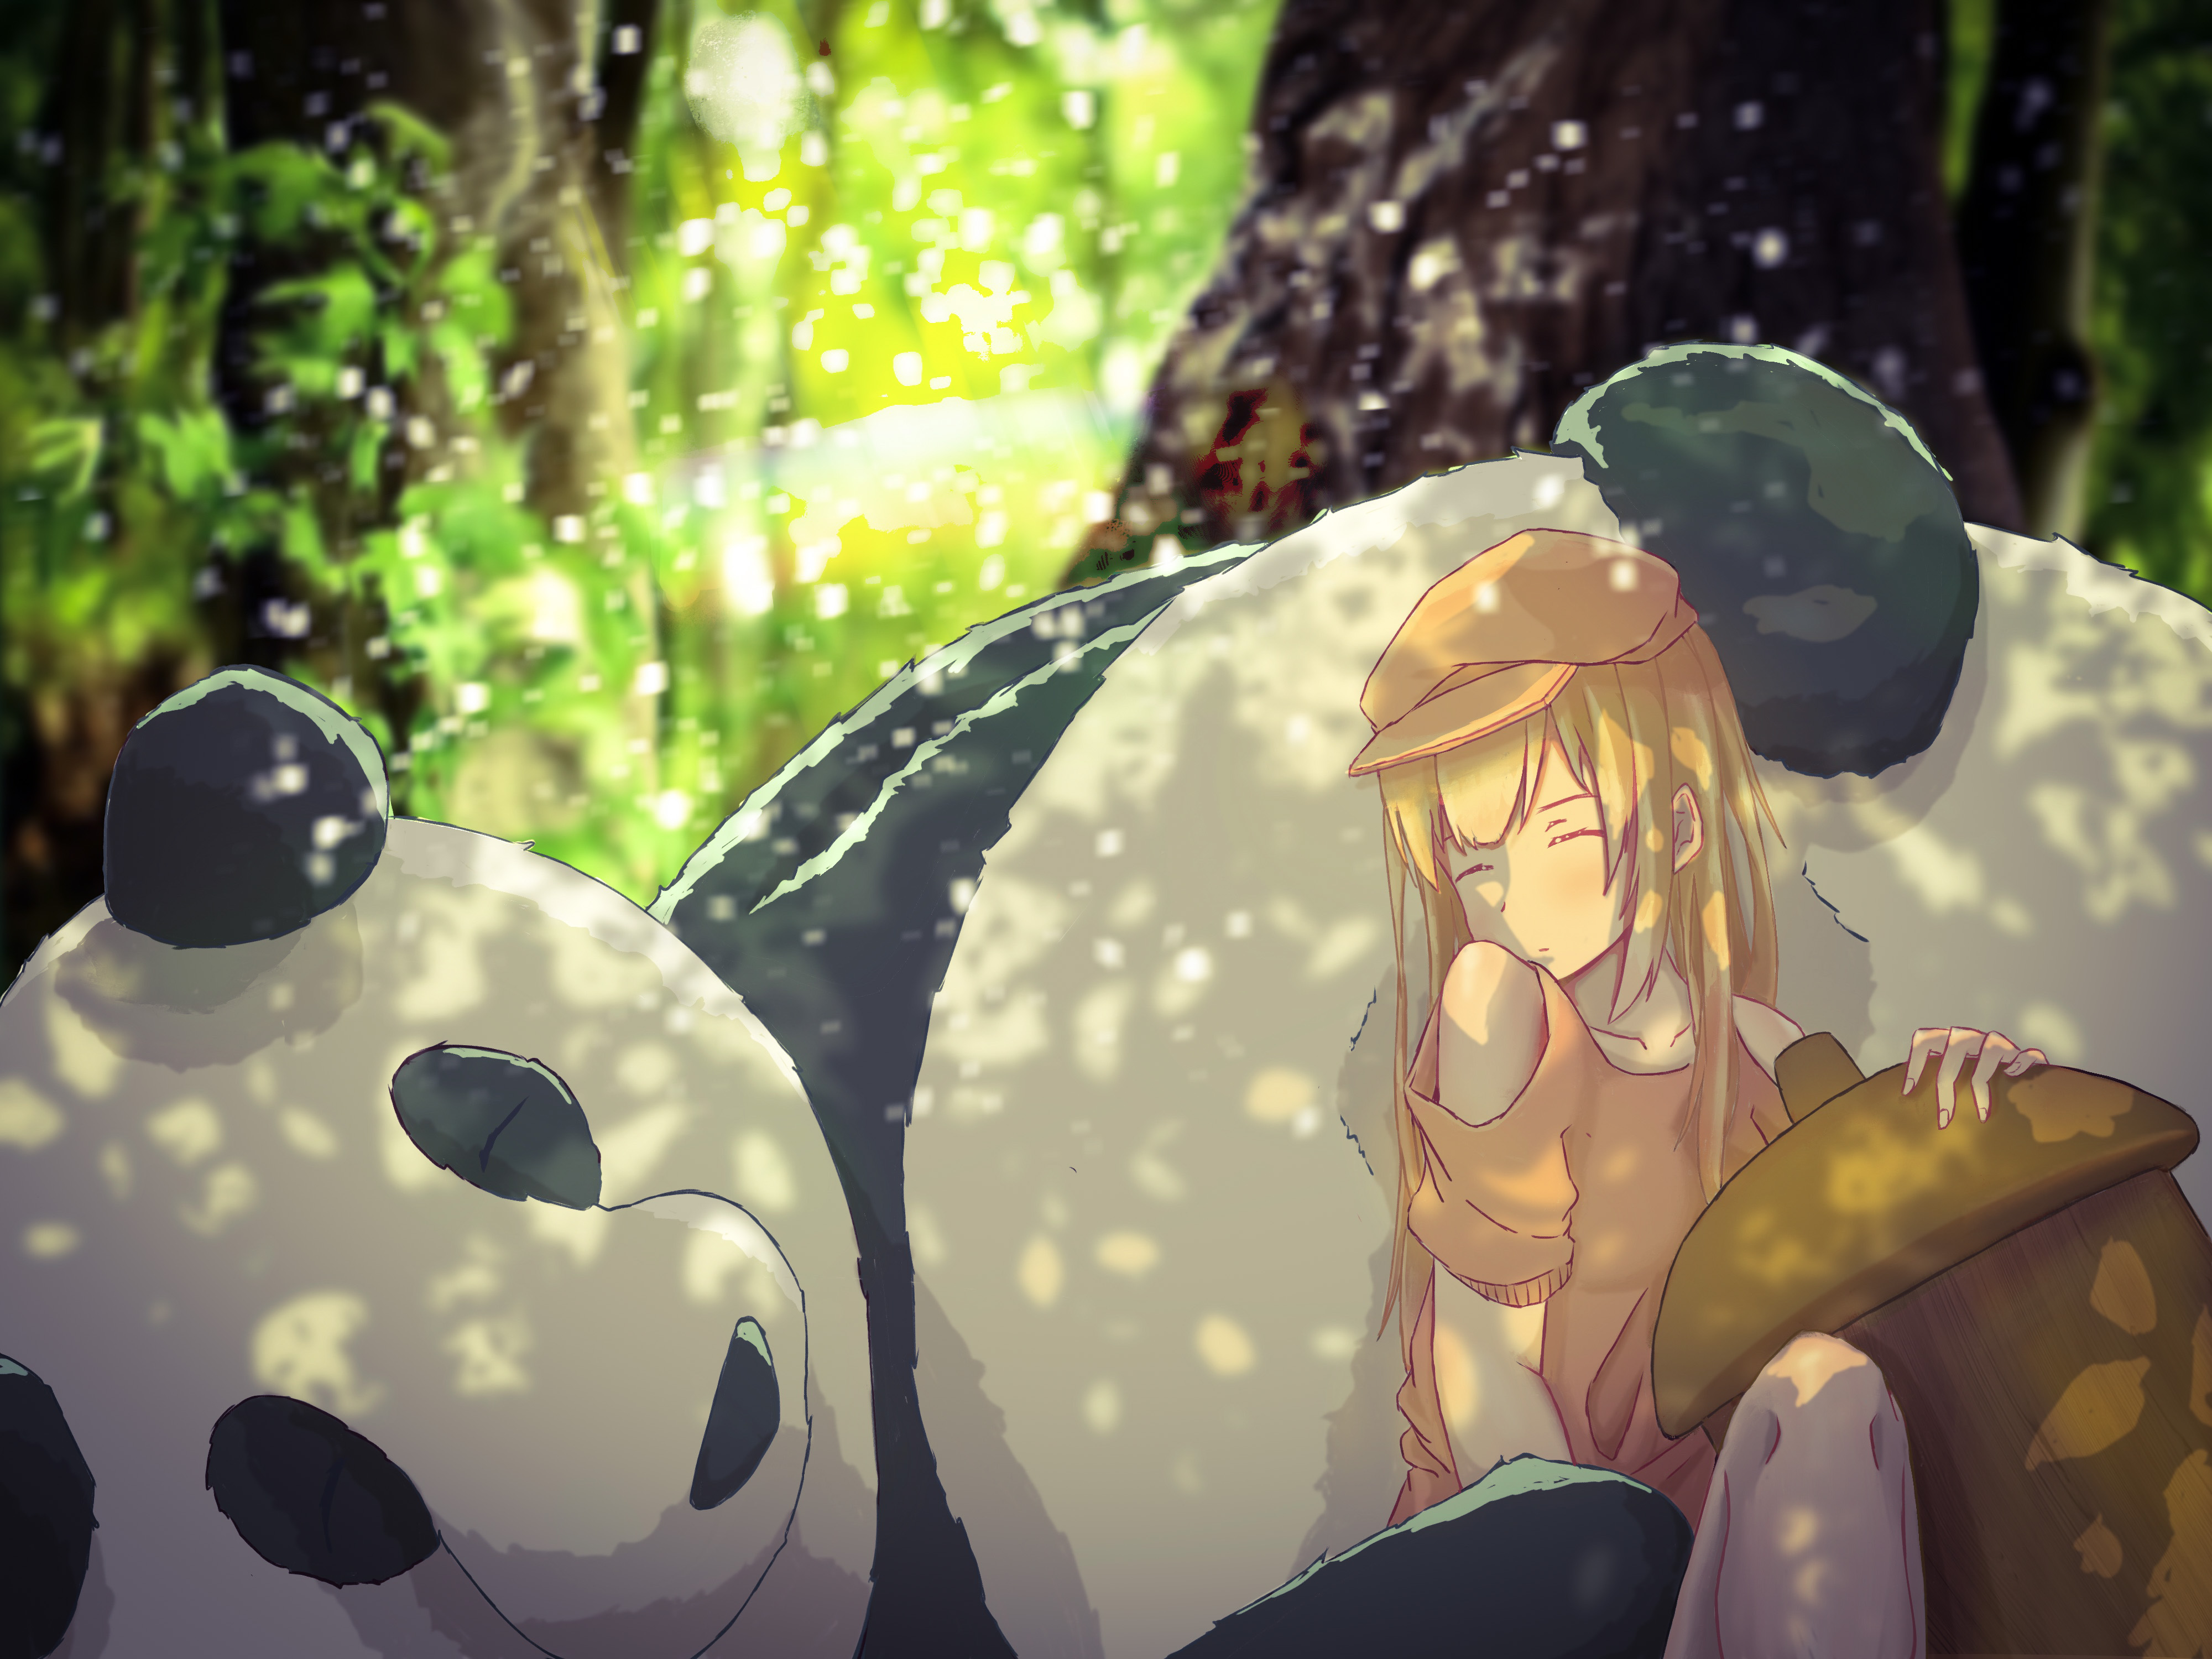 Free download wallpaper Anime, Girl, Blonde, Panda, Sleeping on your PC desktop